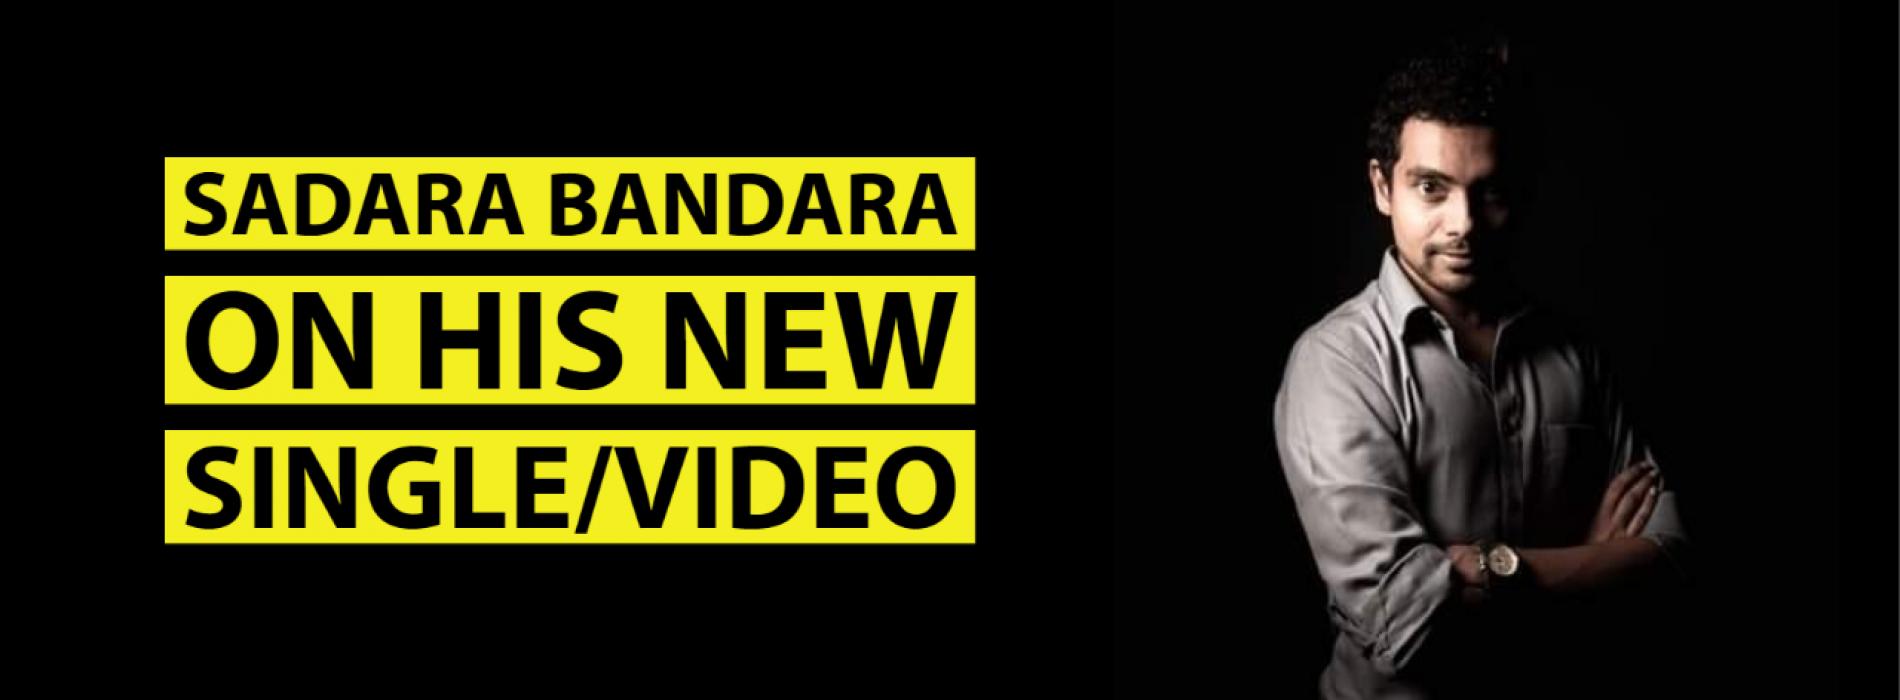 News : Sadara Bandara Has A New Music Video Dropping Today